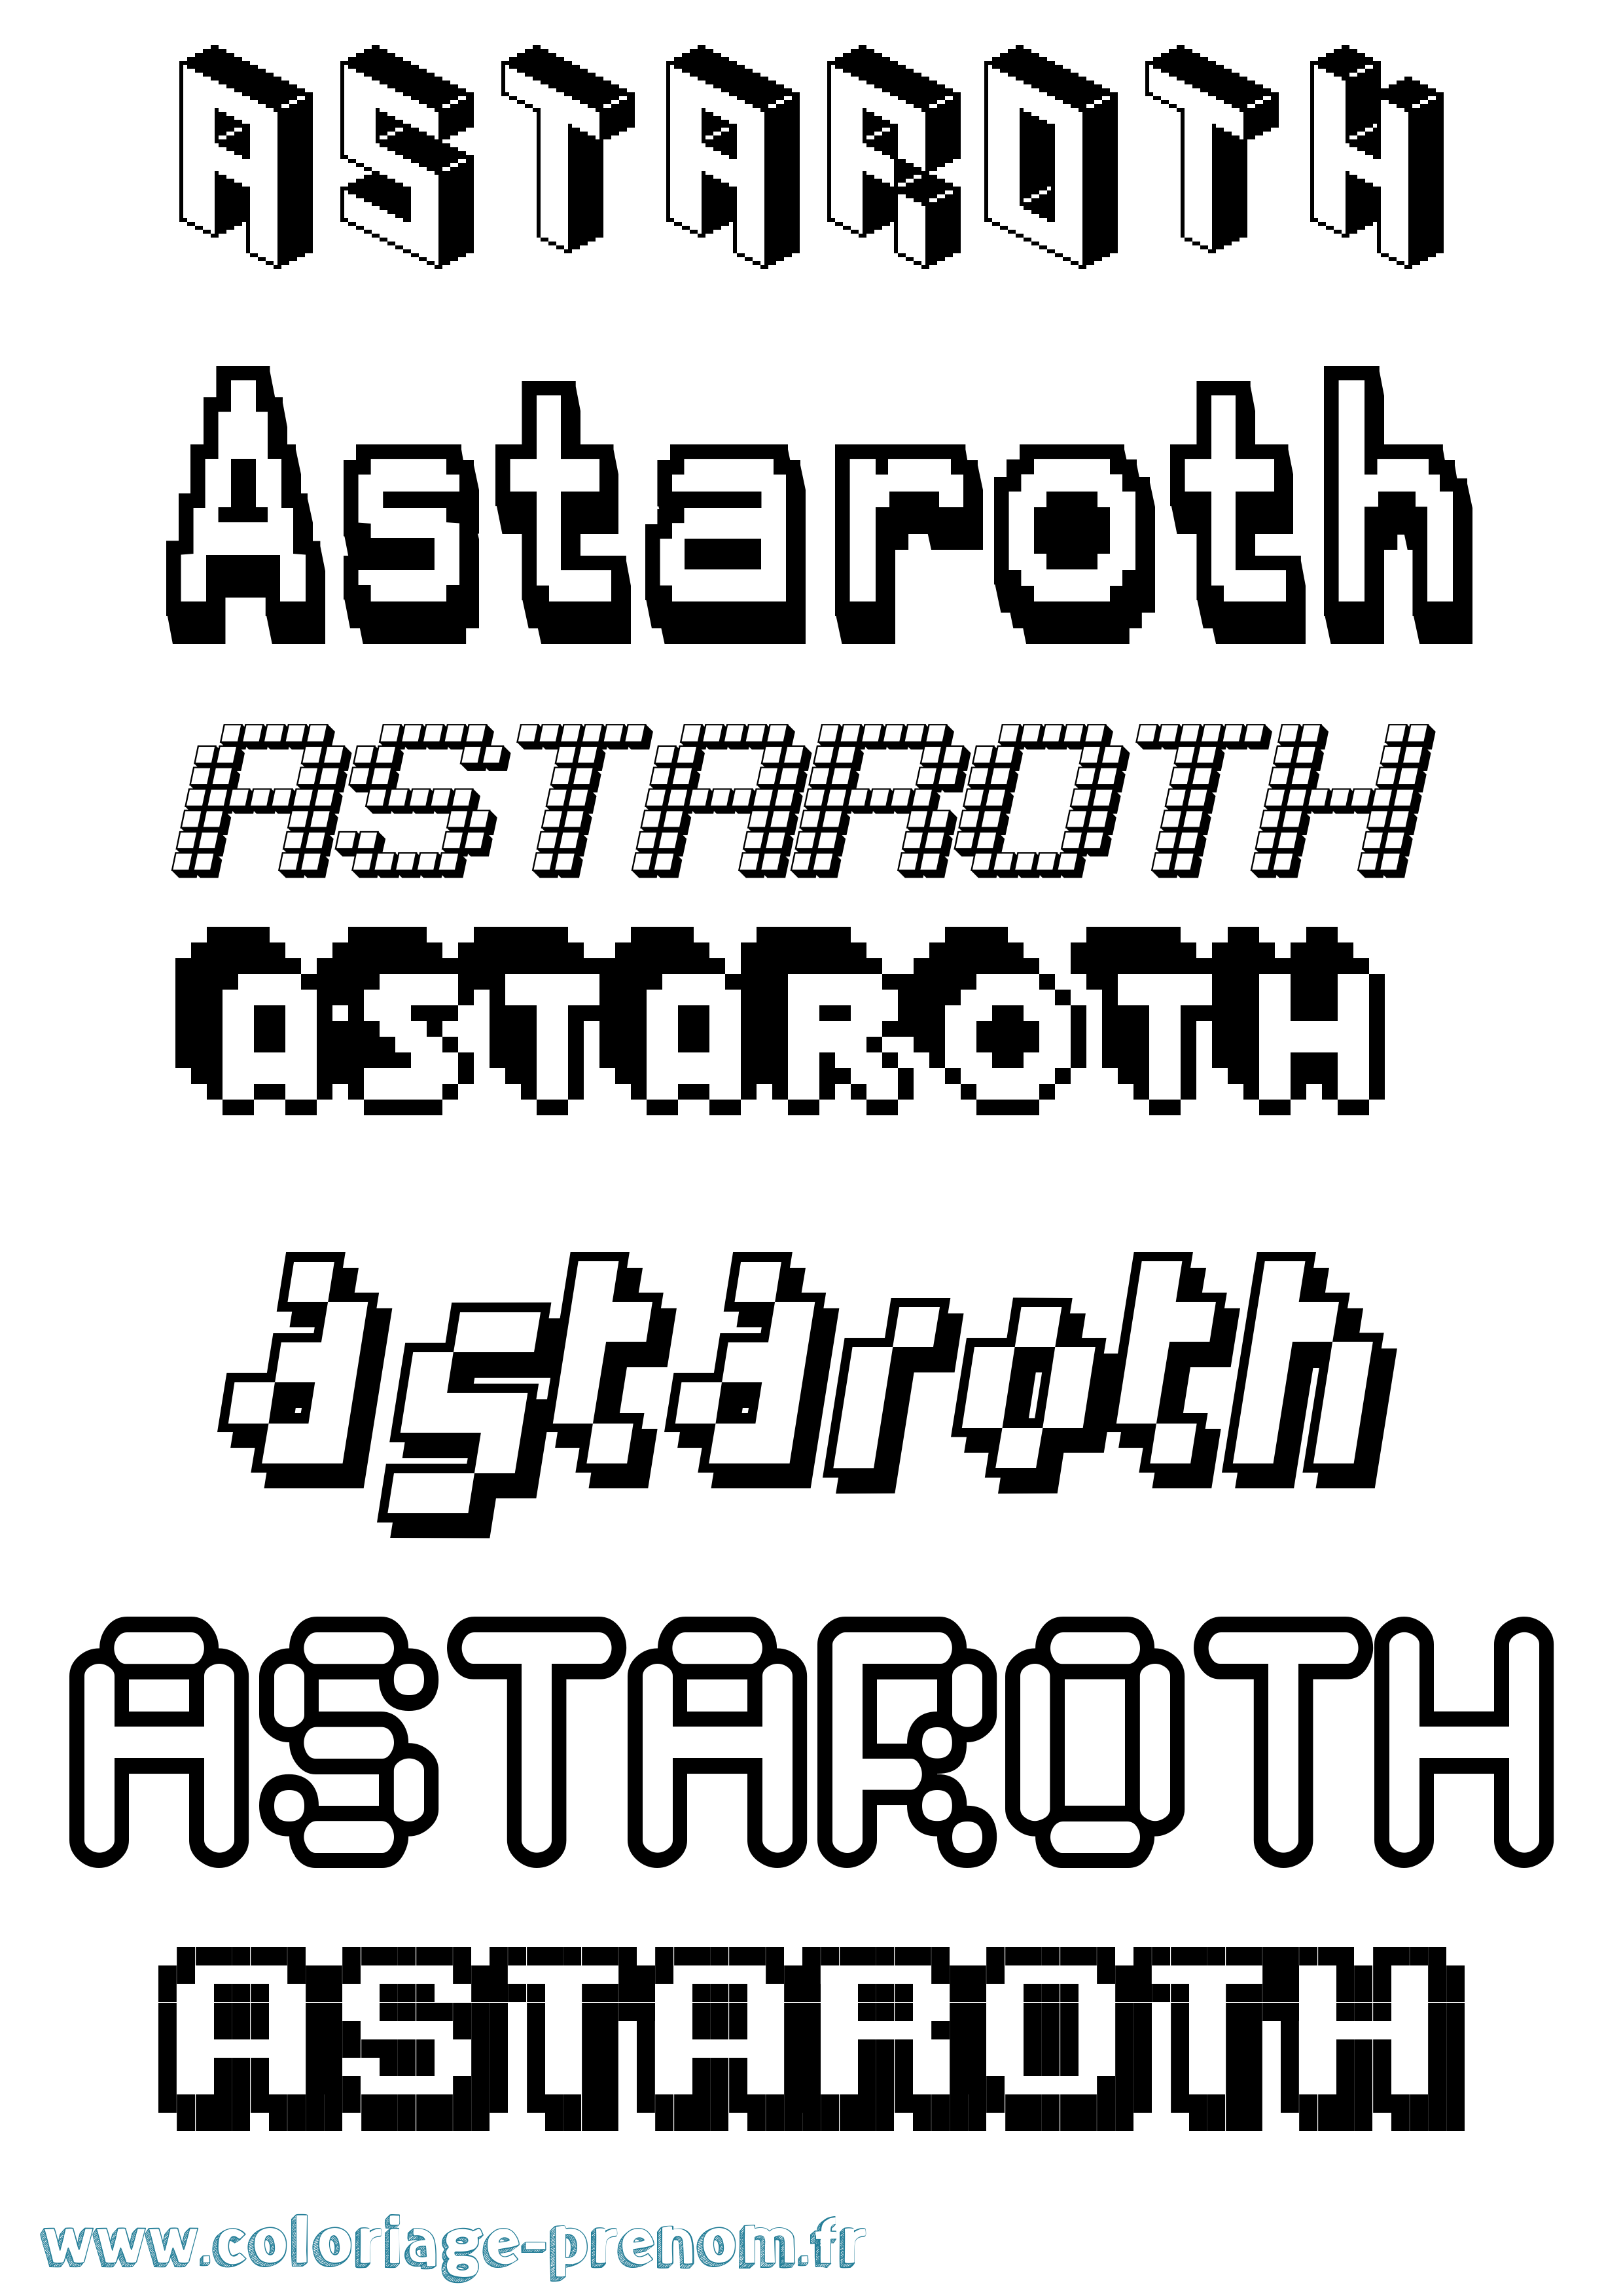 Coloriage prénom Astaroth Pixel